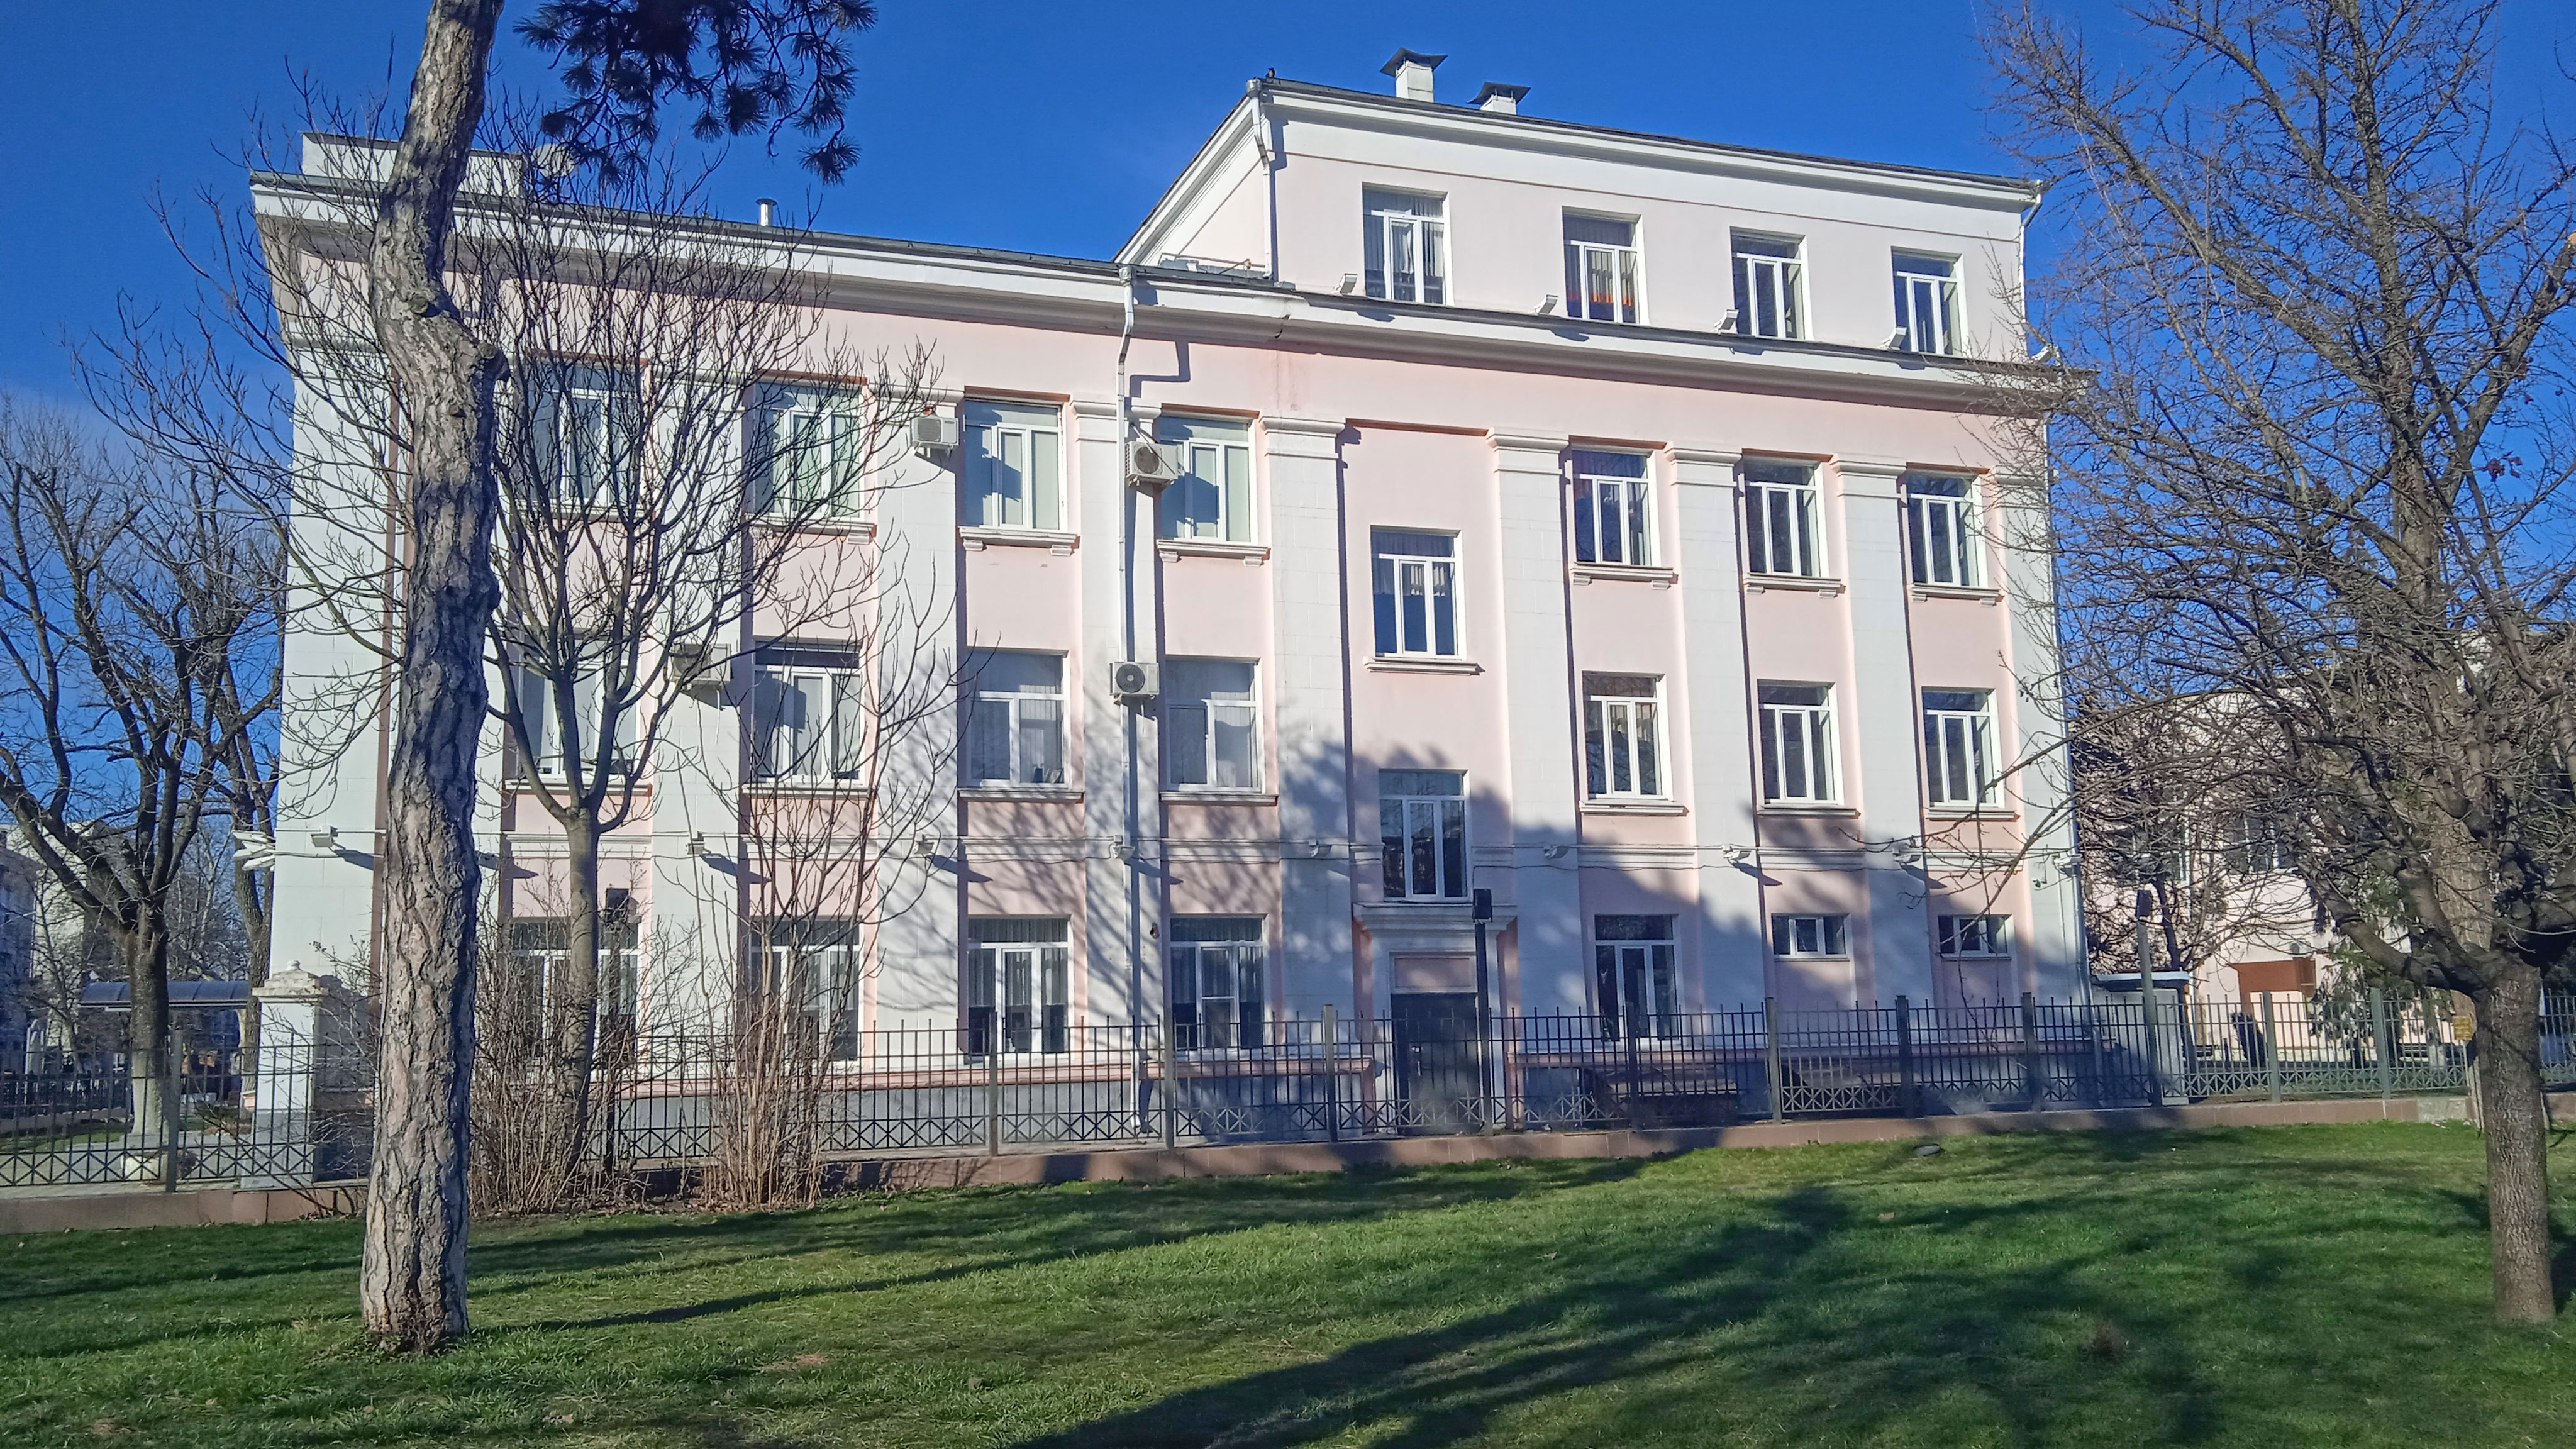 Обзор здания лицея №48 г. Краснодар.